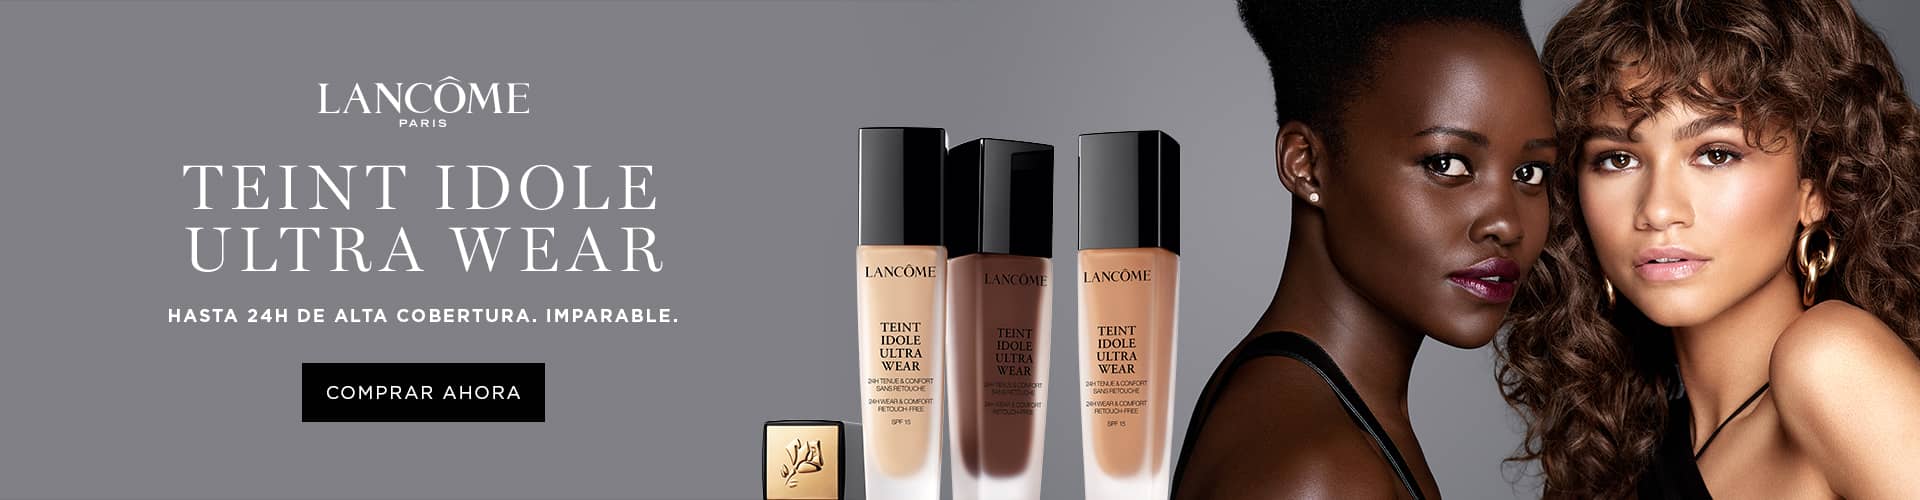 Lancome Maquillaje | Compra Online en 